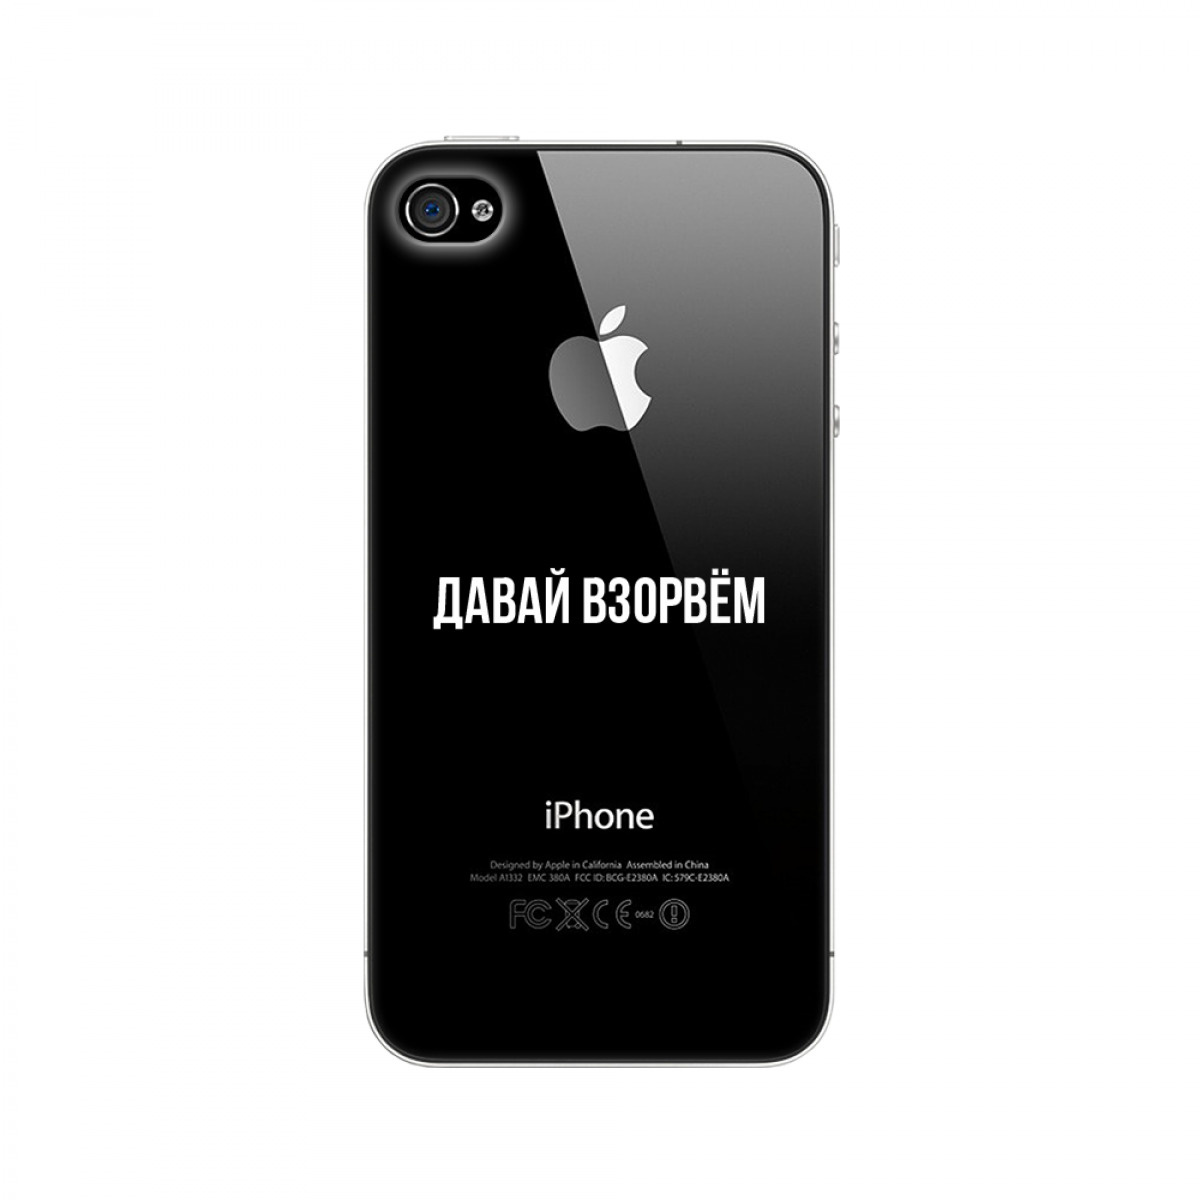 Айфон 4 в россии